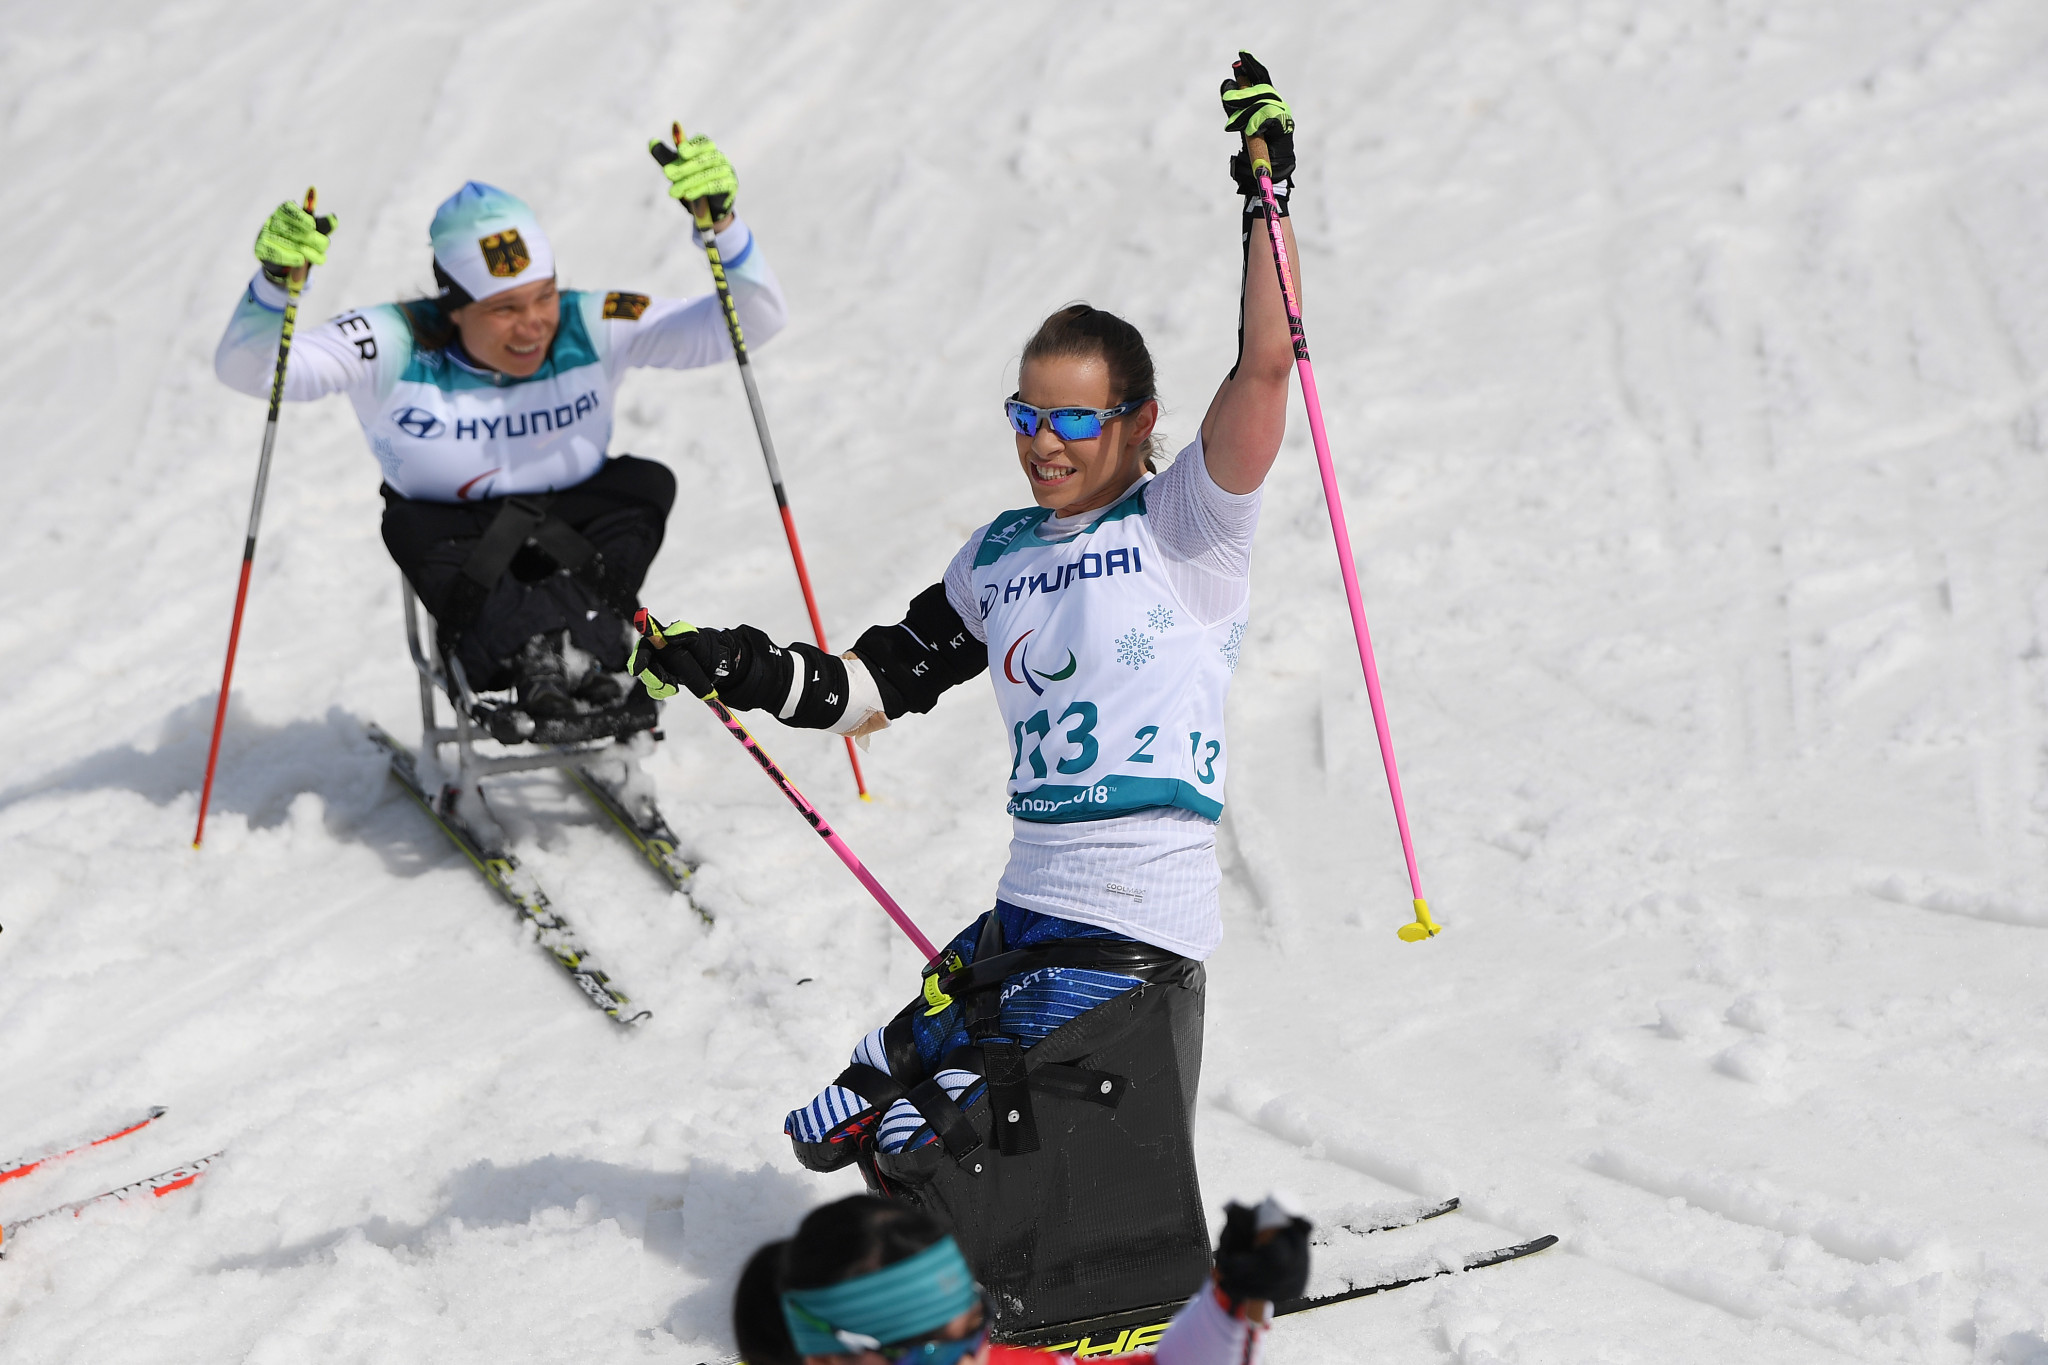 Masters, Holub and Daviet all win again at World Para Nordic Skiing Championships 